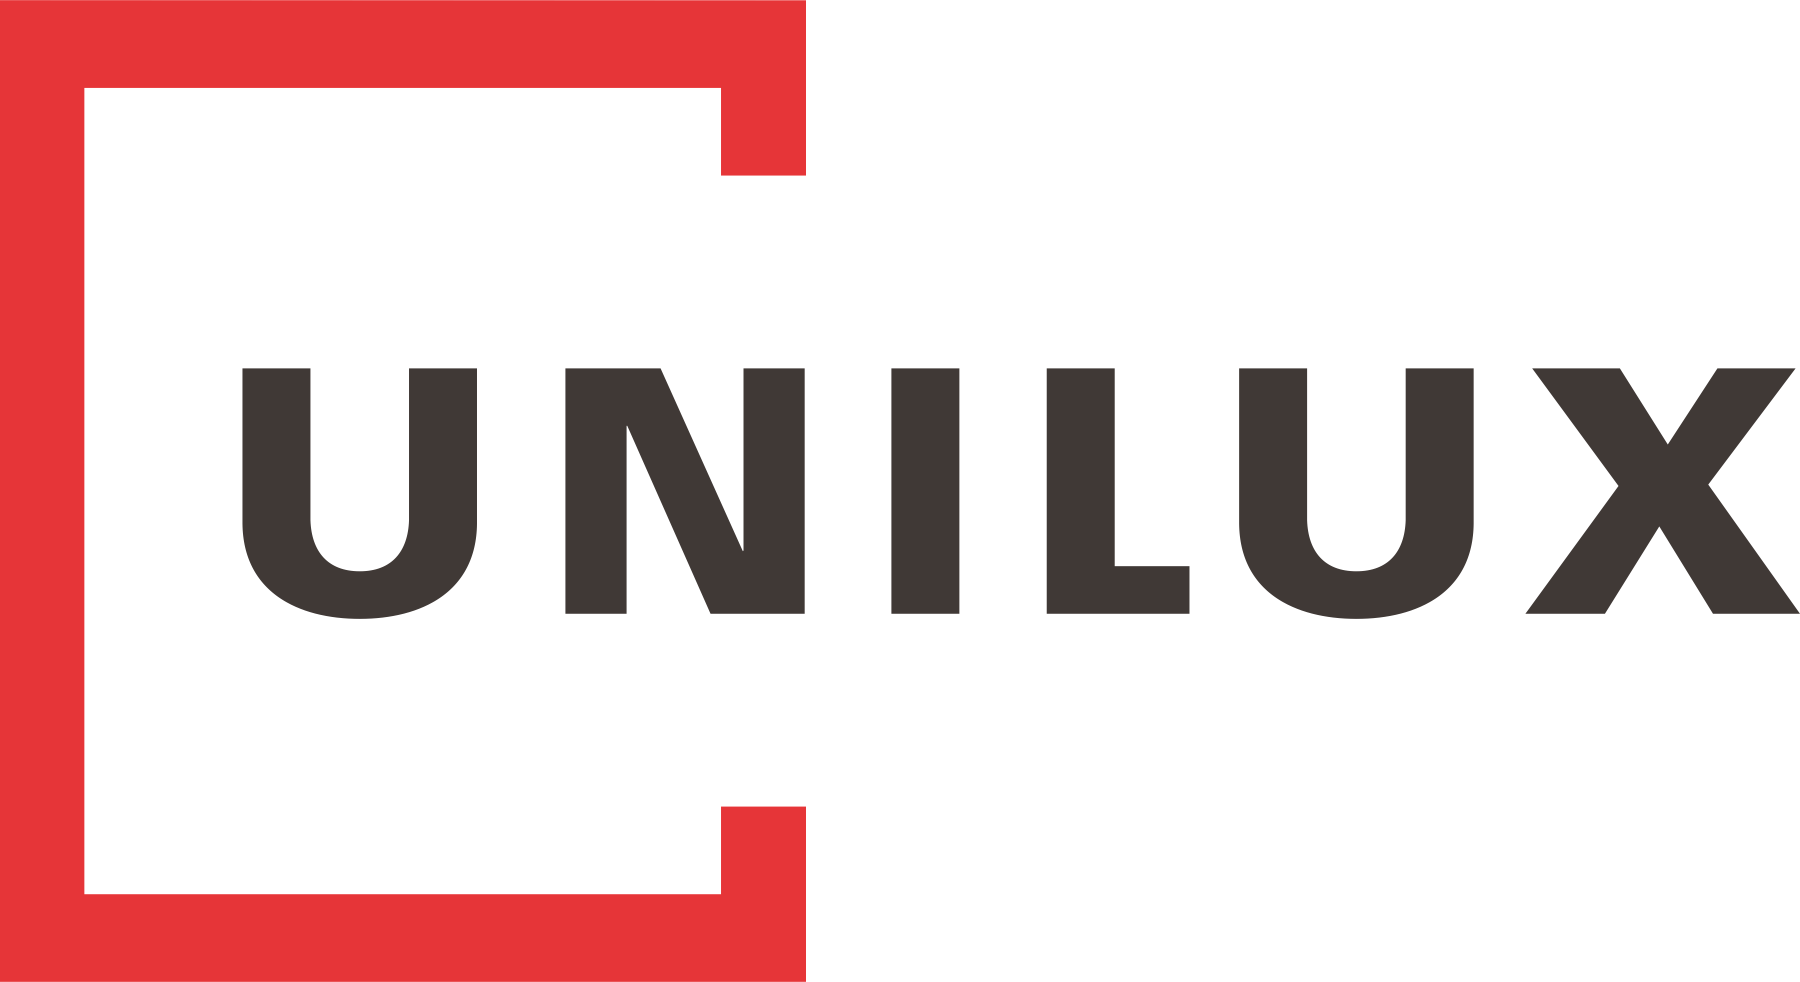 Das Unilux Logo in schwarzer Schrift und rotem Quadrat als Fenster angedeutet.